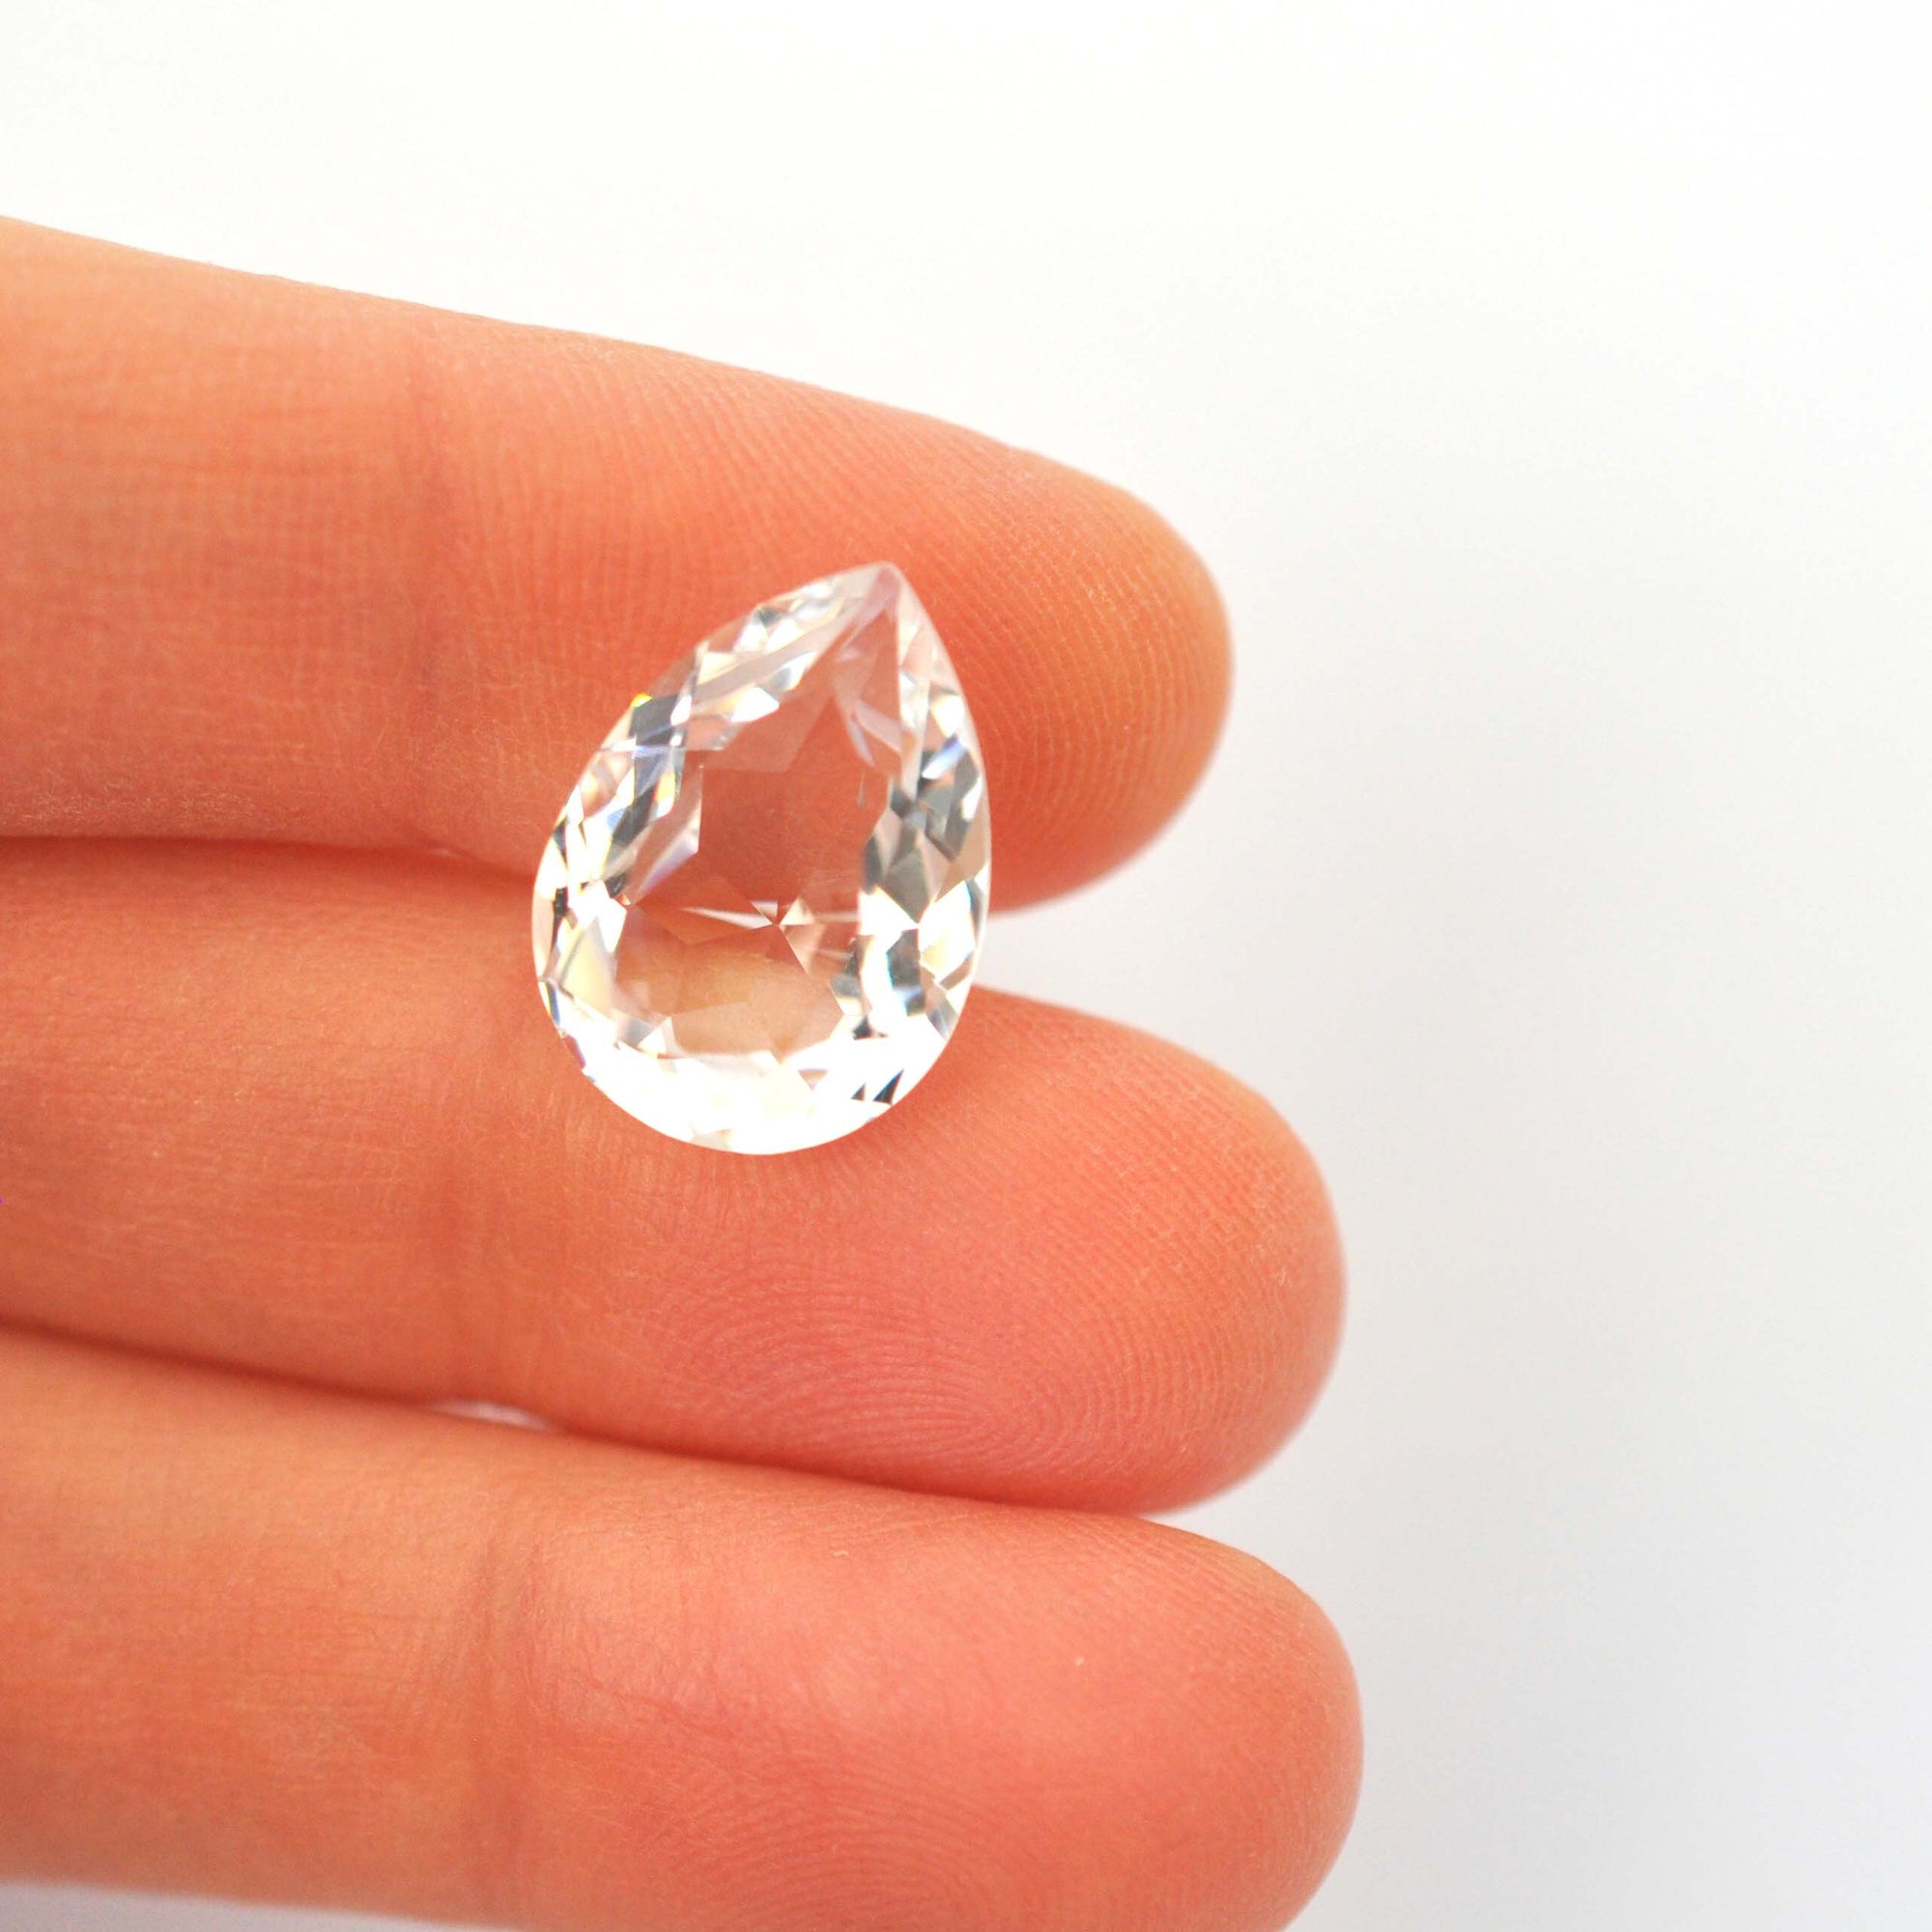 Crystal Unfoiled Pear Shape 4320 Barton Crystal 18x13mm, 1 Piece